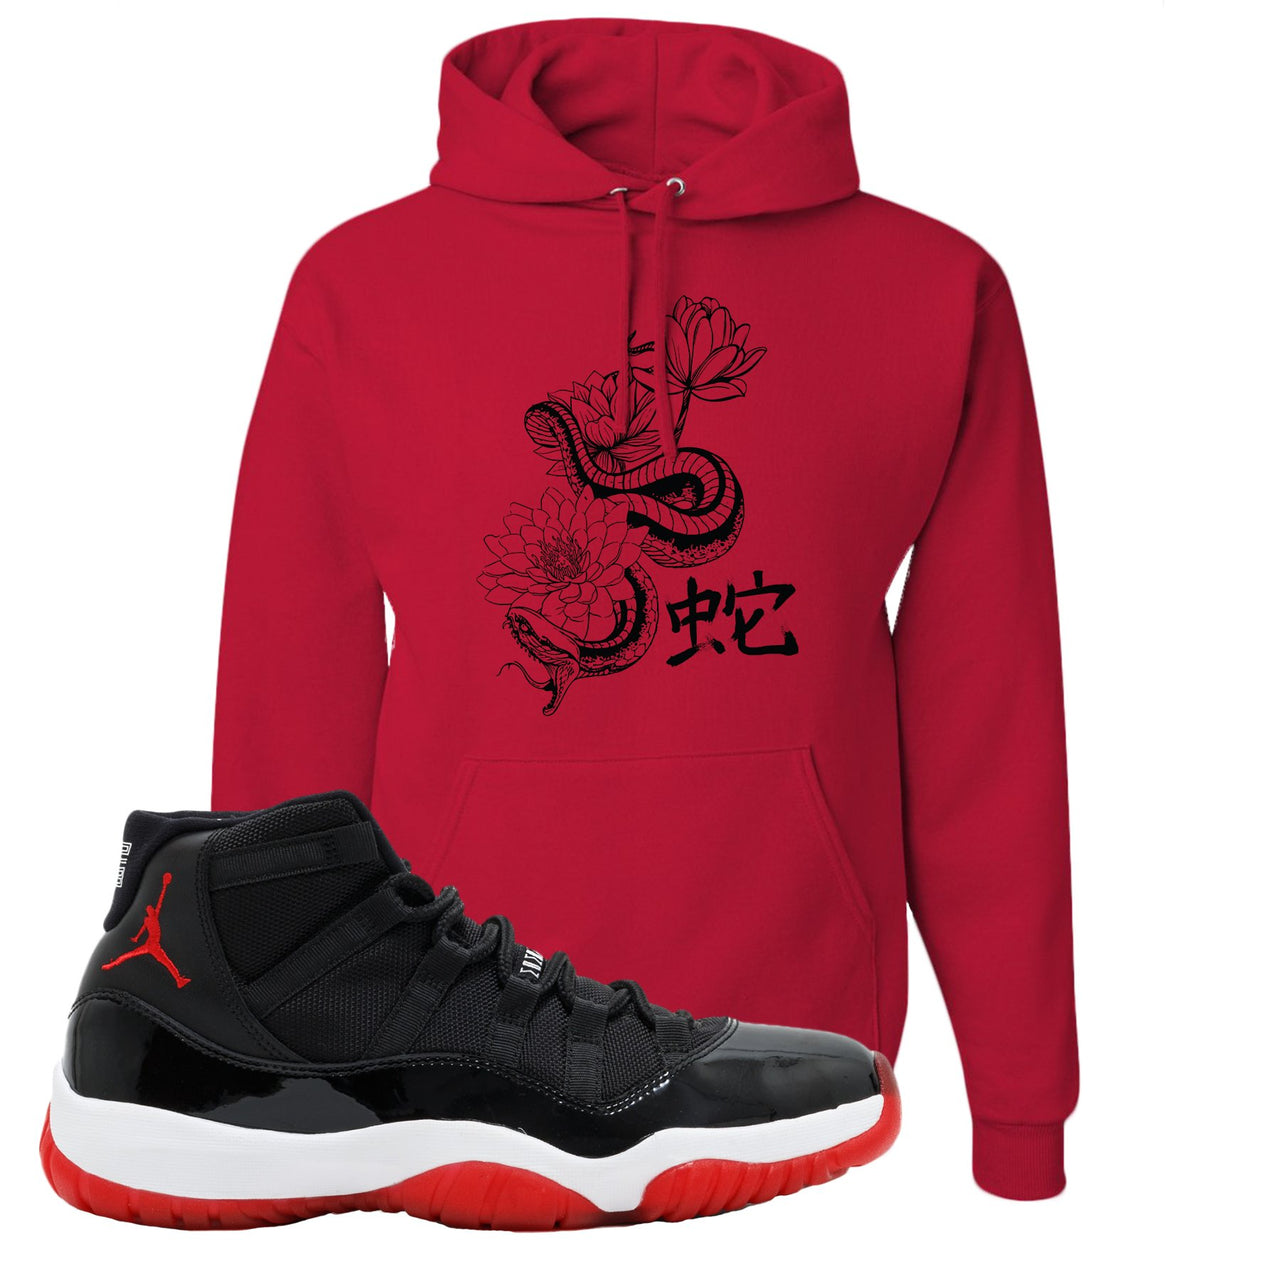 Jordan 11 Bred Snake Lotus Red Sneaker Hook Up Pullover Hoodie